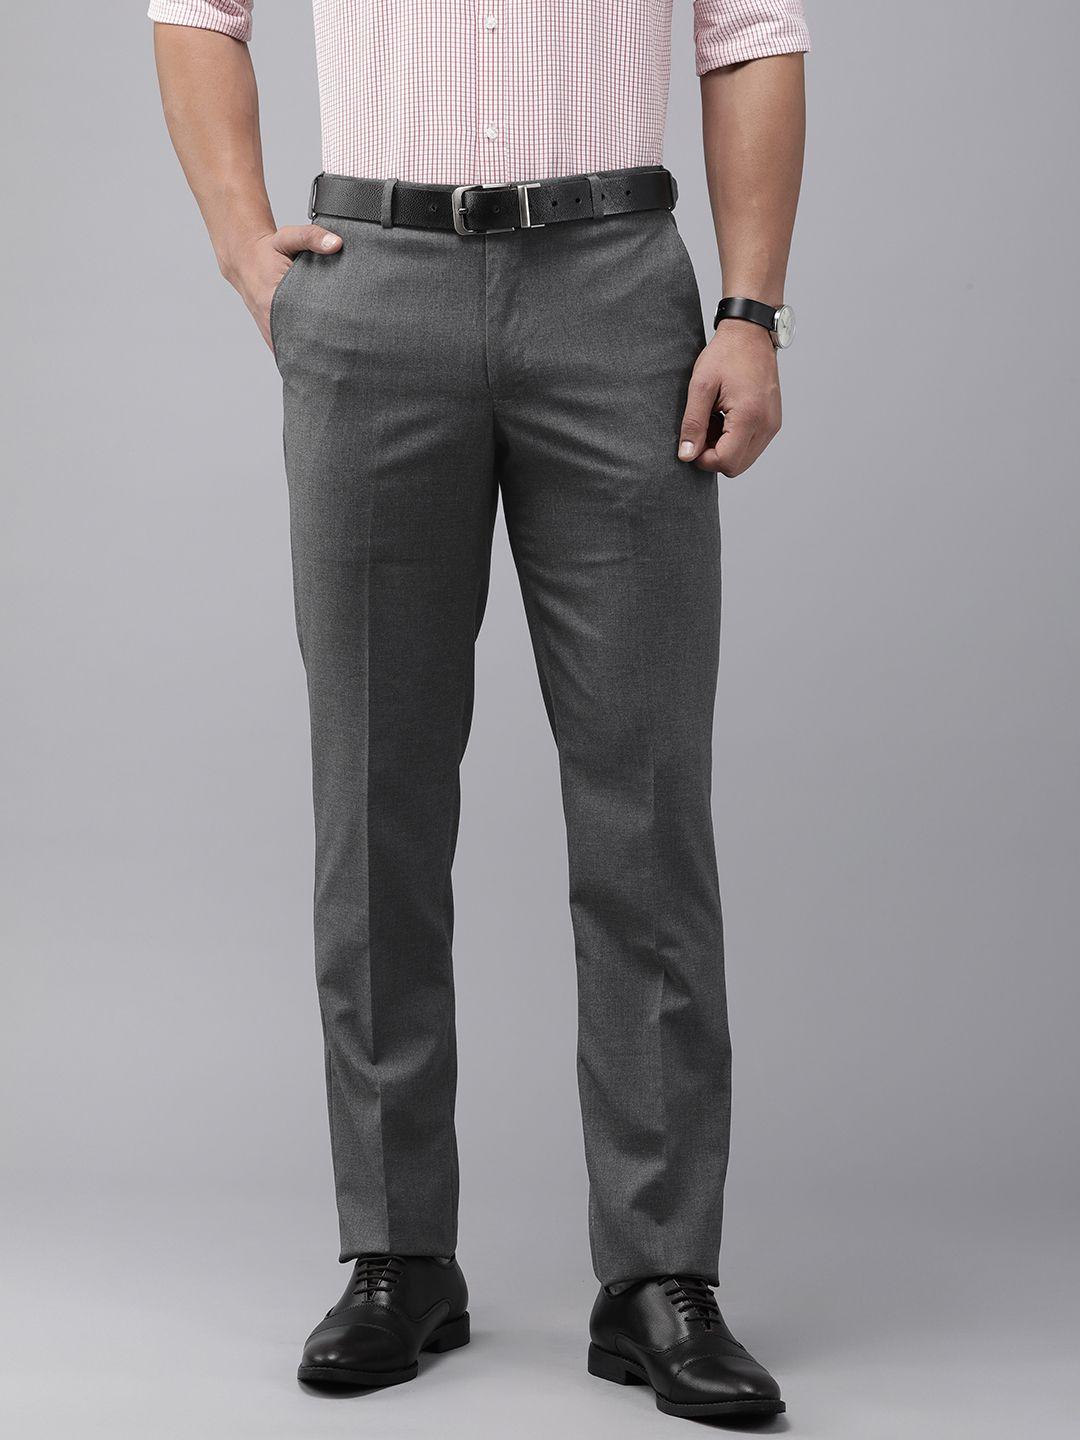 park-avenue-men-formal-trousers